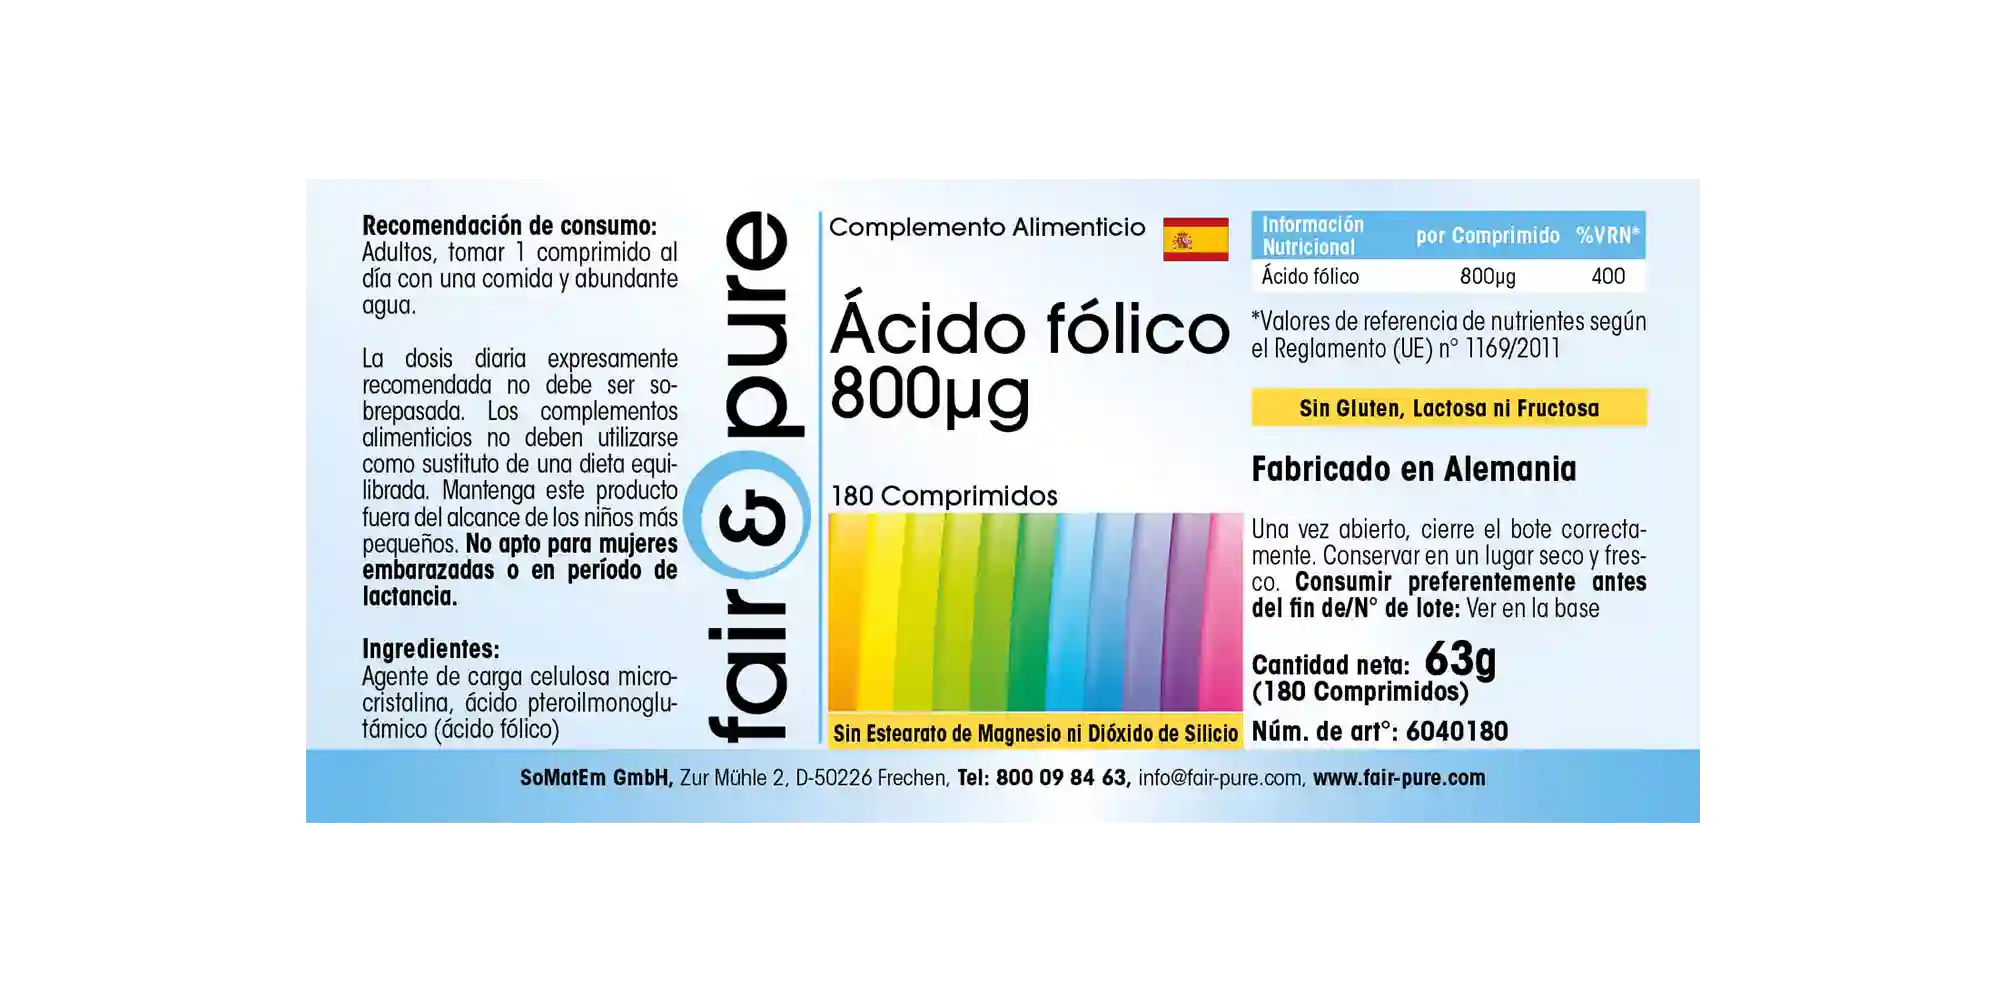 Acido folico 800µg